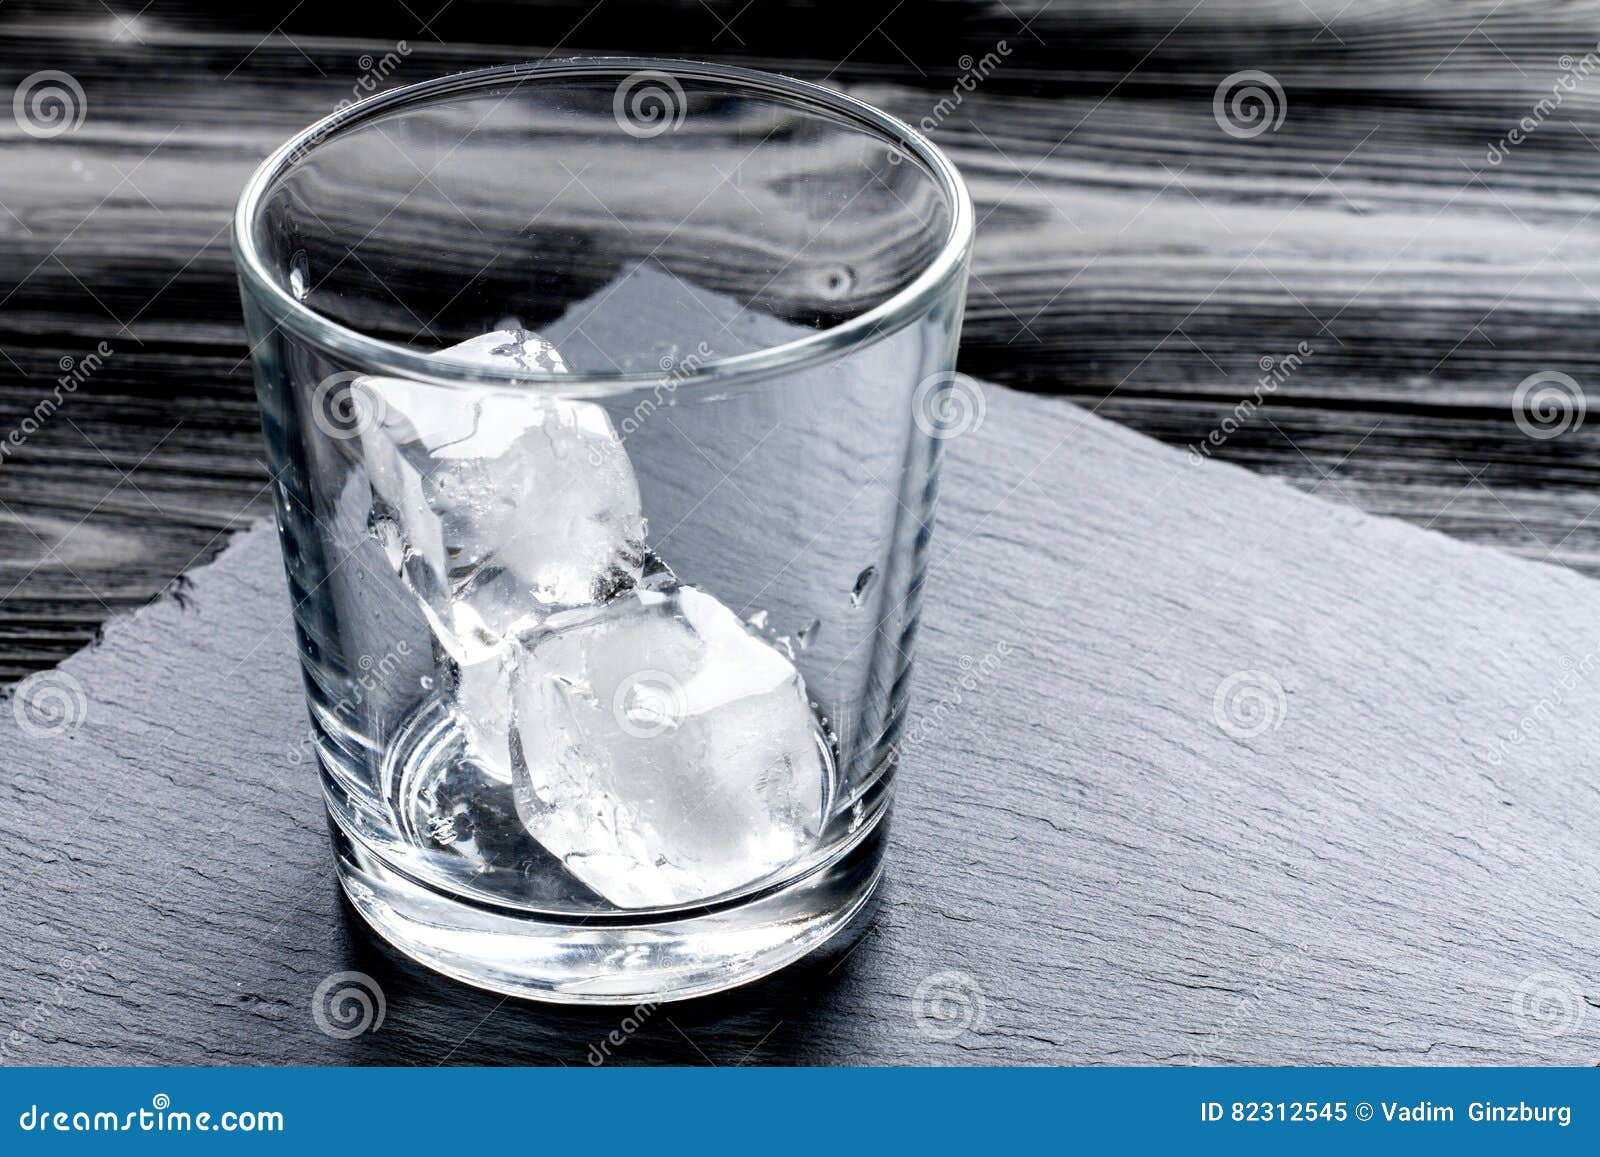 Неси пустой стакан. Пустой стакан со льдом. Стеклянный стакан со льдом. Бокал с ледяными трещинами. Лед в стакане разбитом.